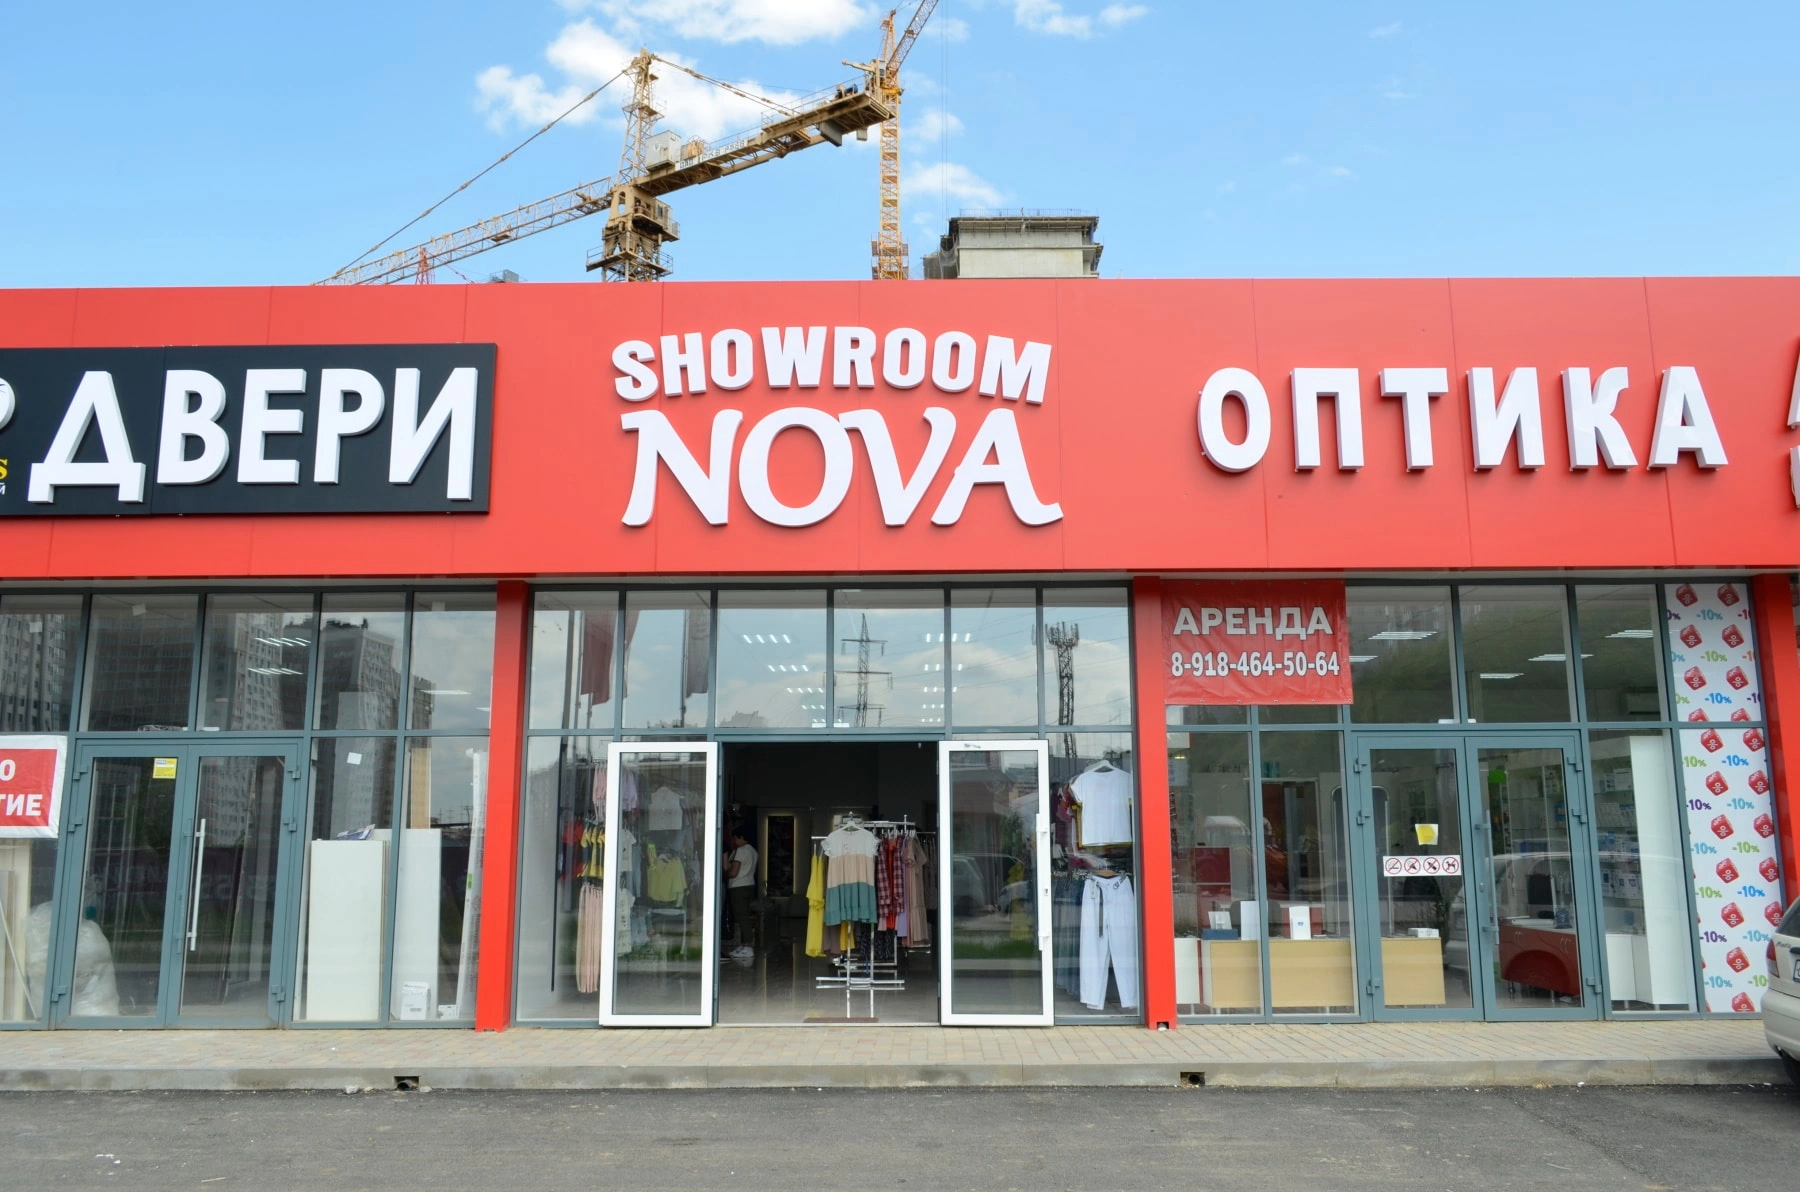 Световые объемные буквы showroom nova. Изготовление рекламных материалов в типографии Quickprint г. Краснодар